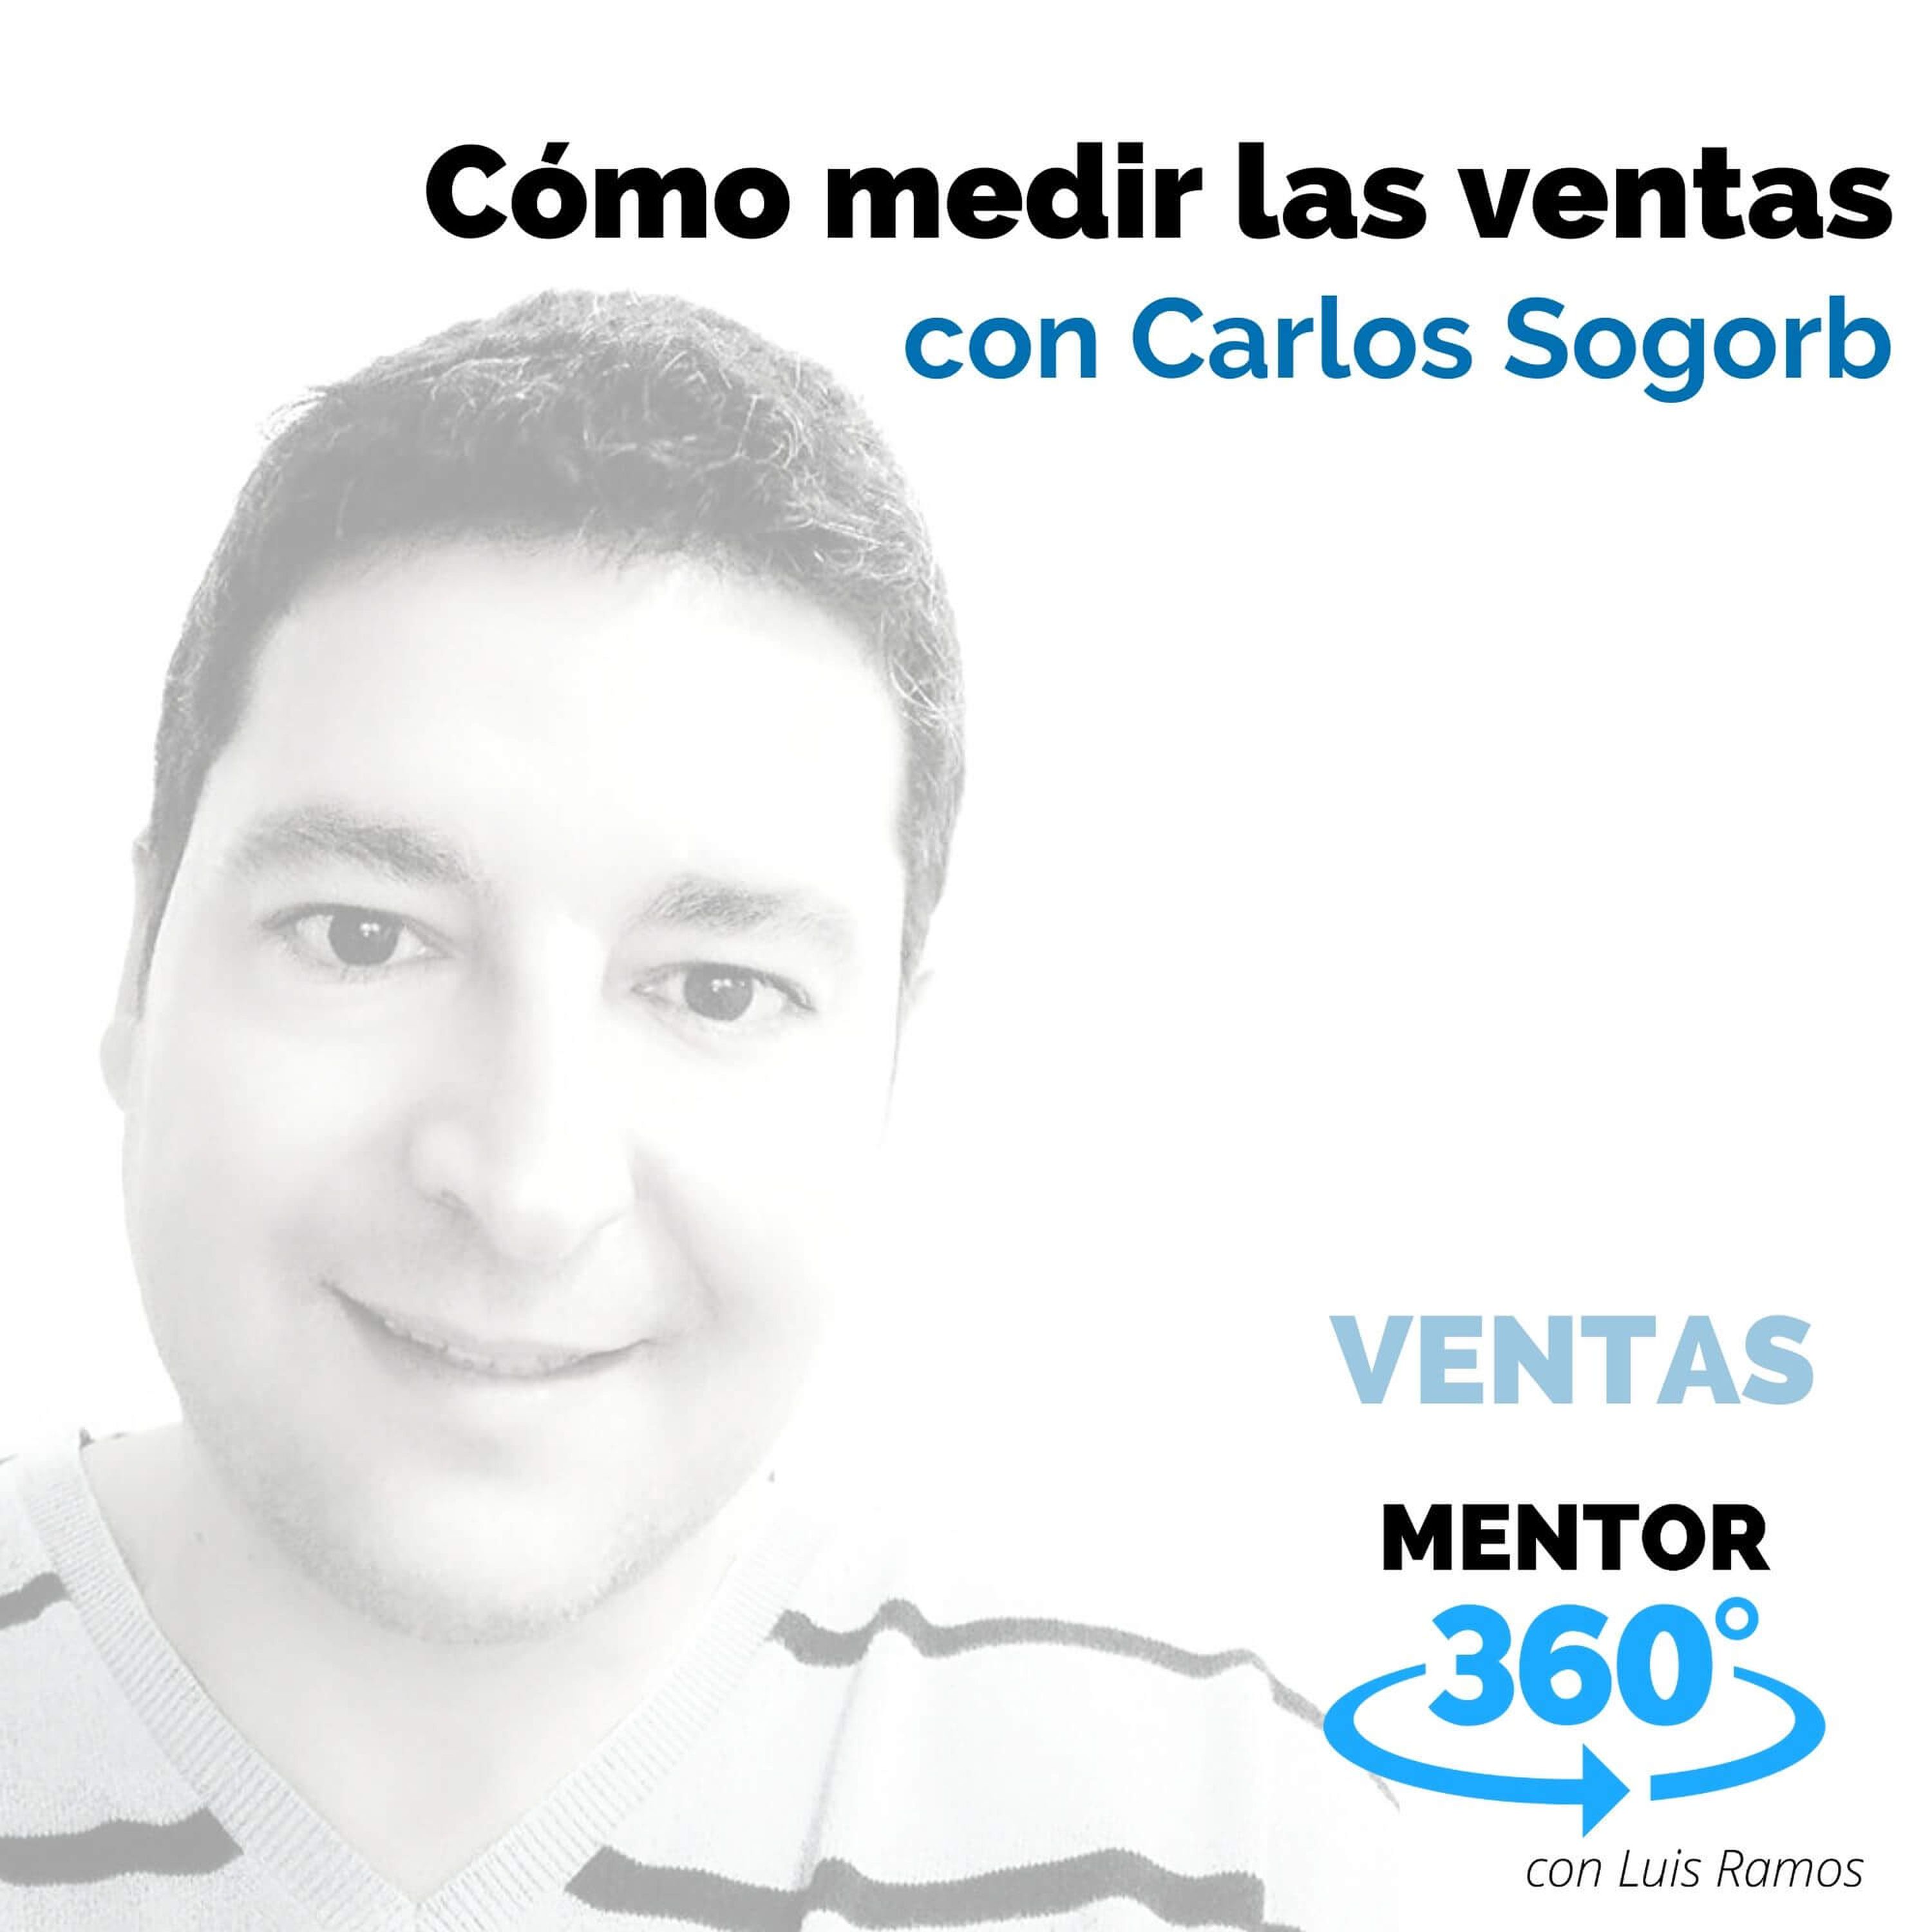 Cómo medir las ventas, con Carlos Sogorb - VENTAS - MENTOR360